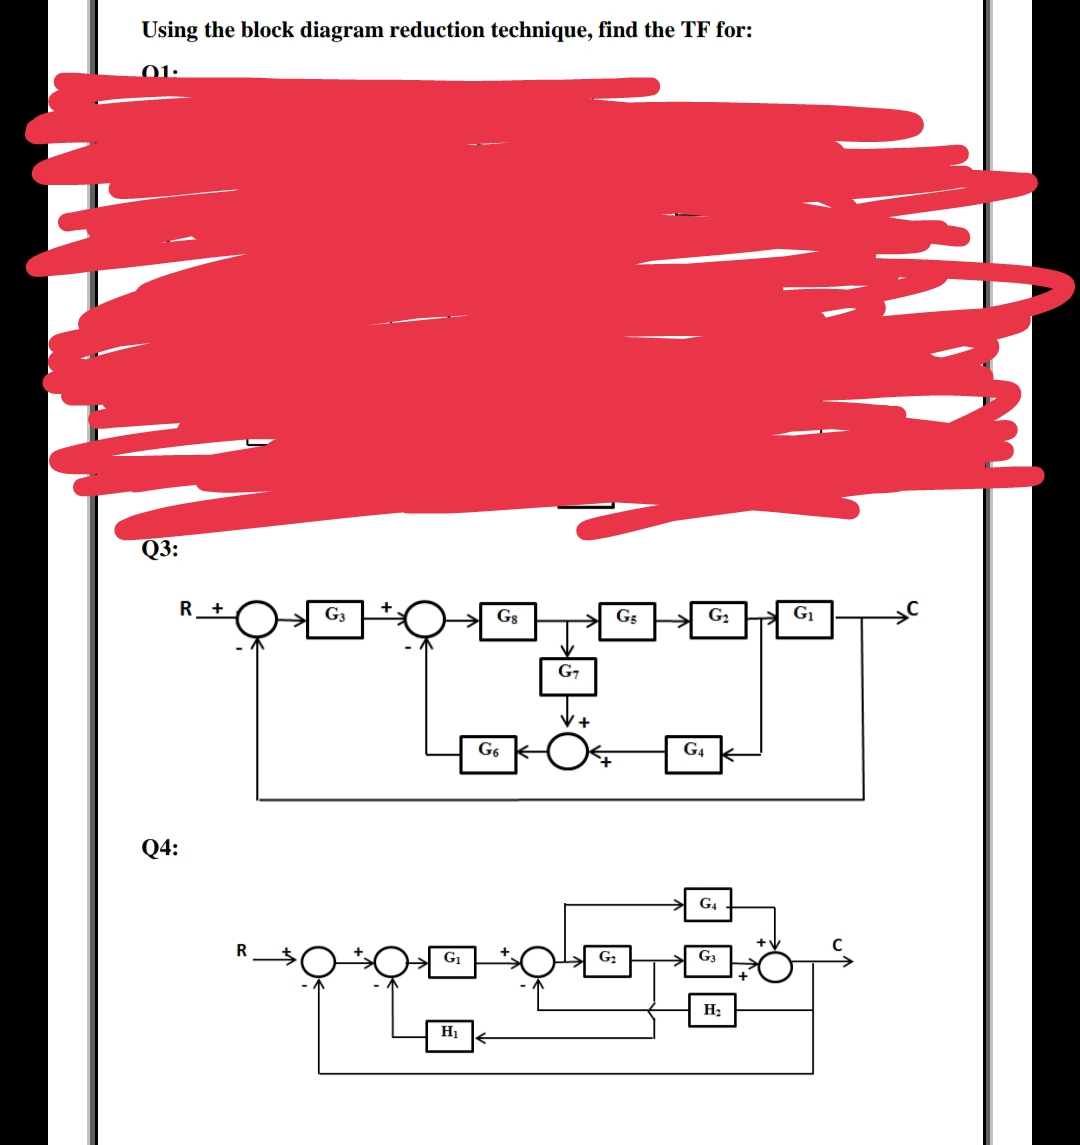 Using the block diagram reduction technique, find the TF for:
01:
Q3:
G3
Gs
G5
G2
G1
G7
G6
G4
Q4:
G4
G1
G:
G3
Hị
